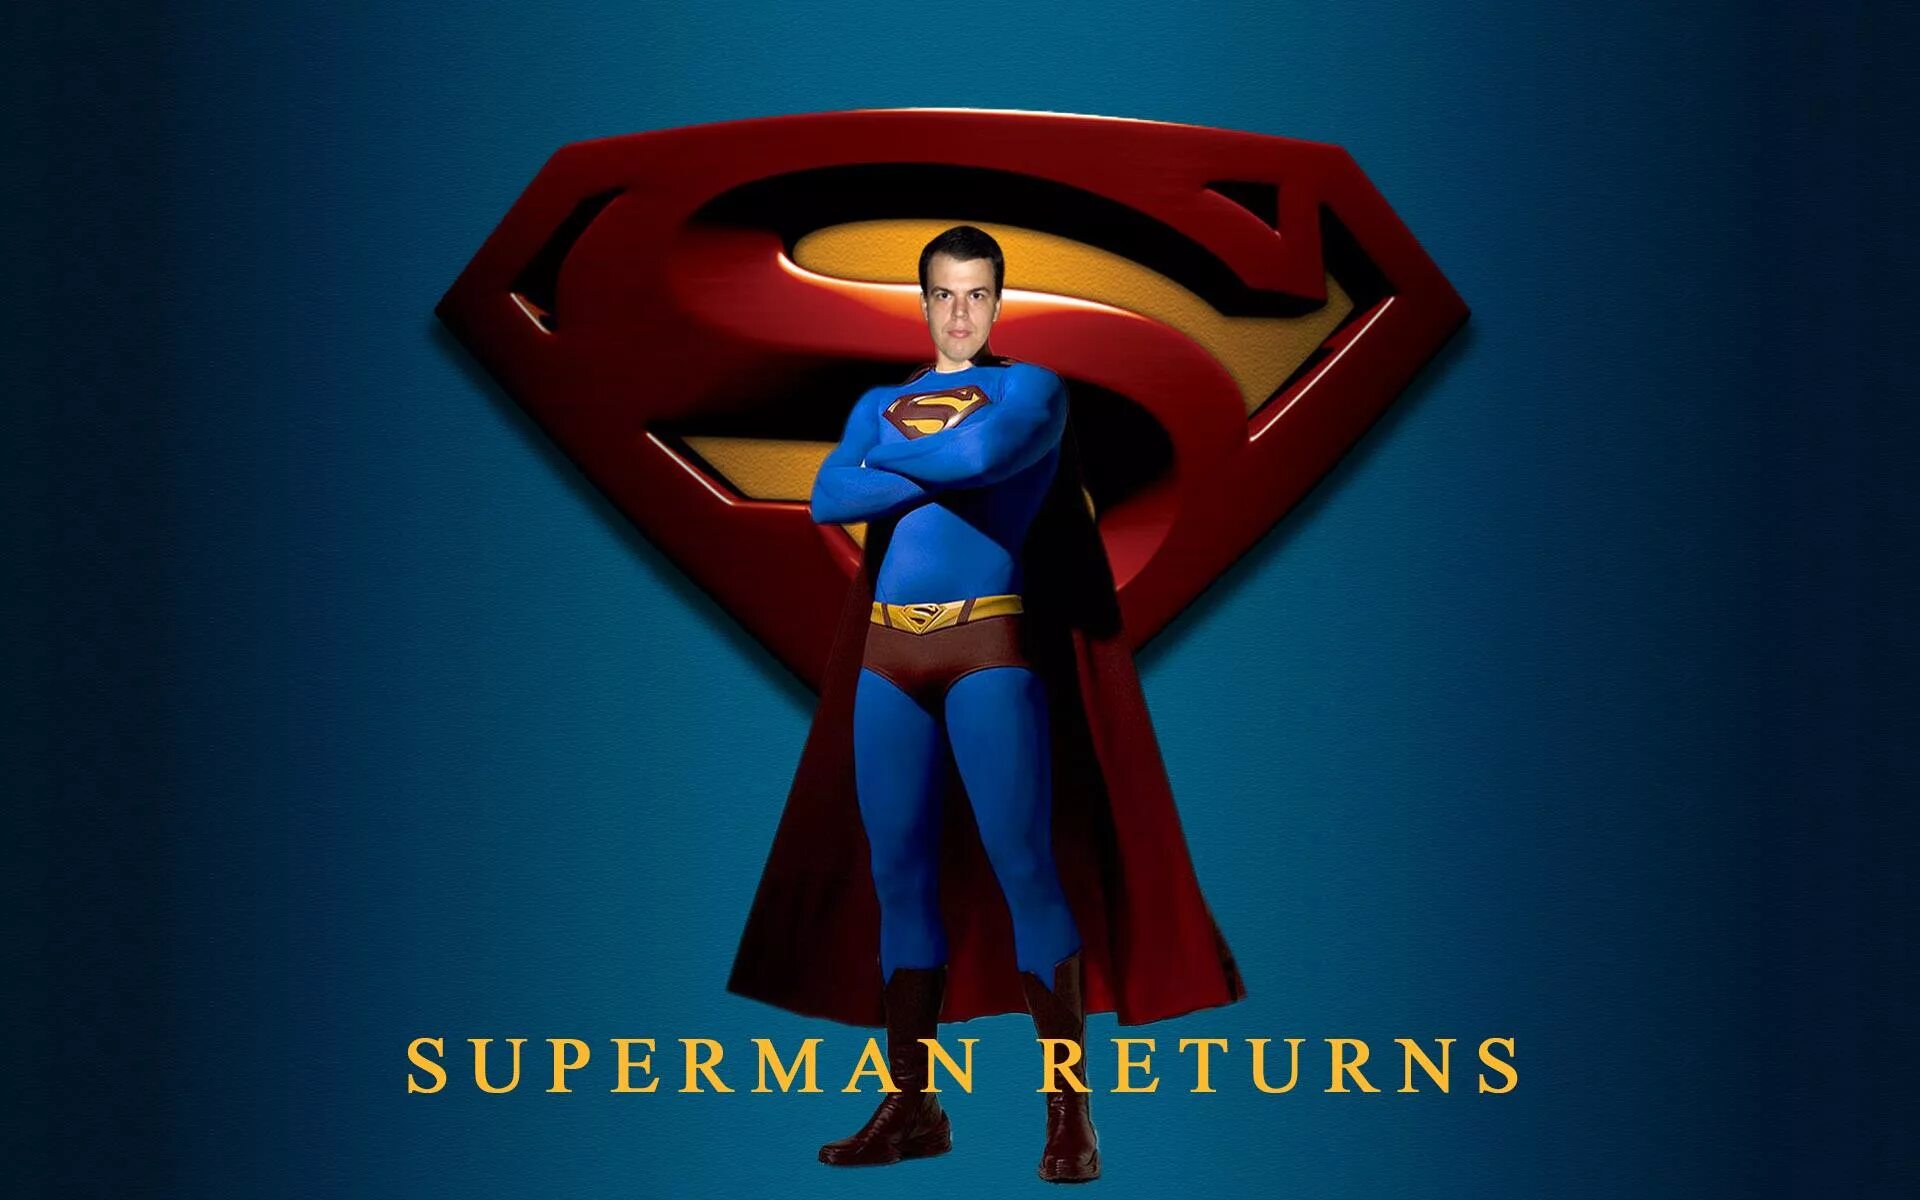 Супермен Постер. Superman Returns игра. Супермен вернулся.